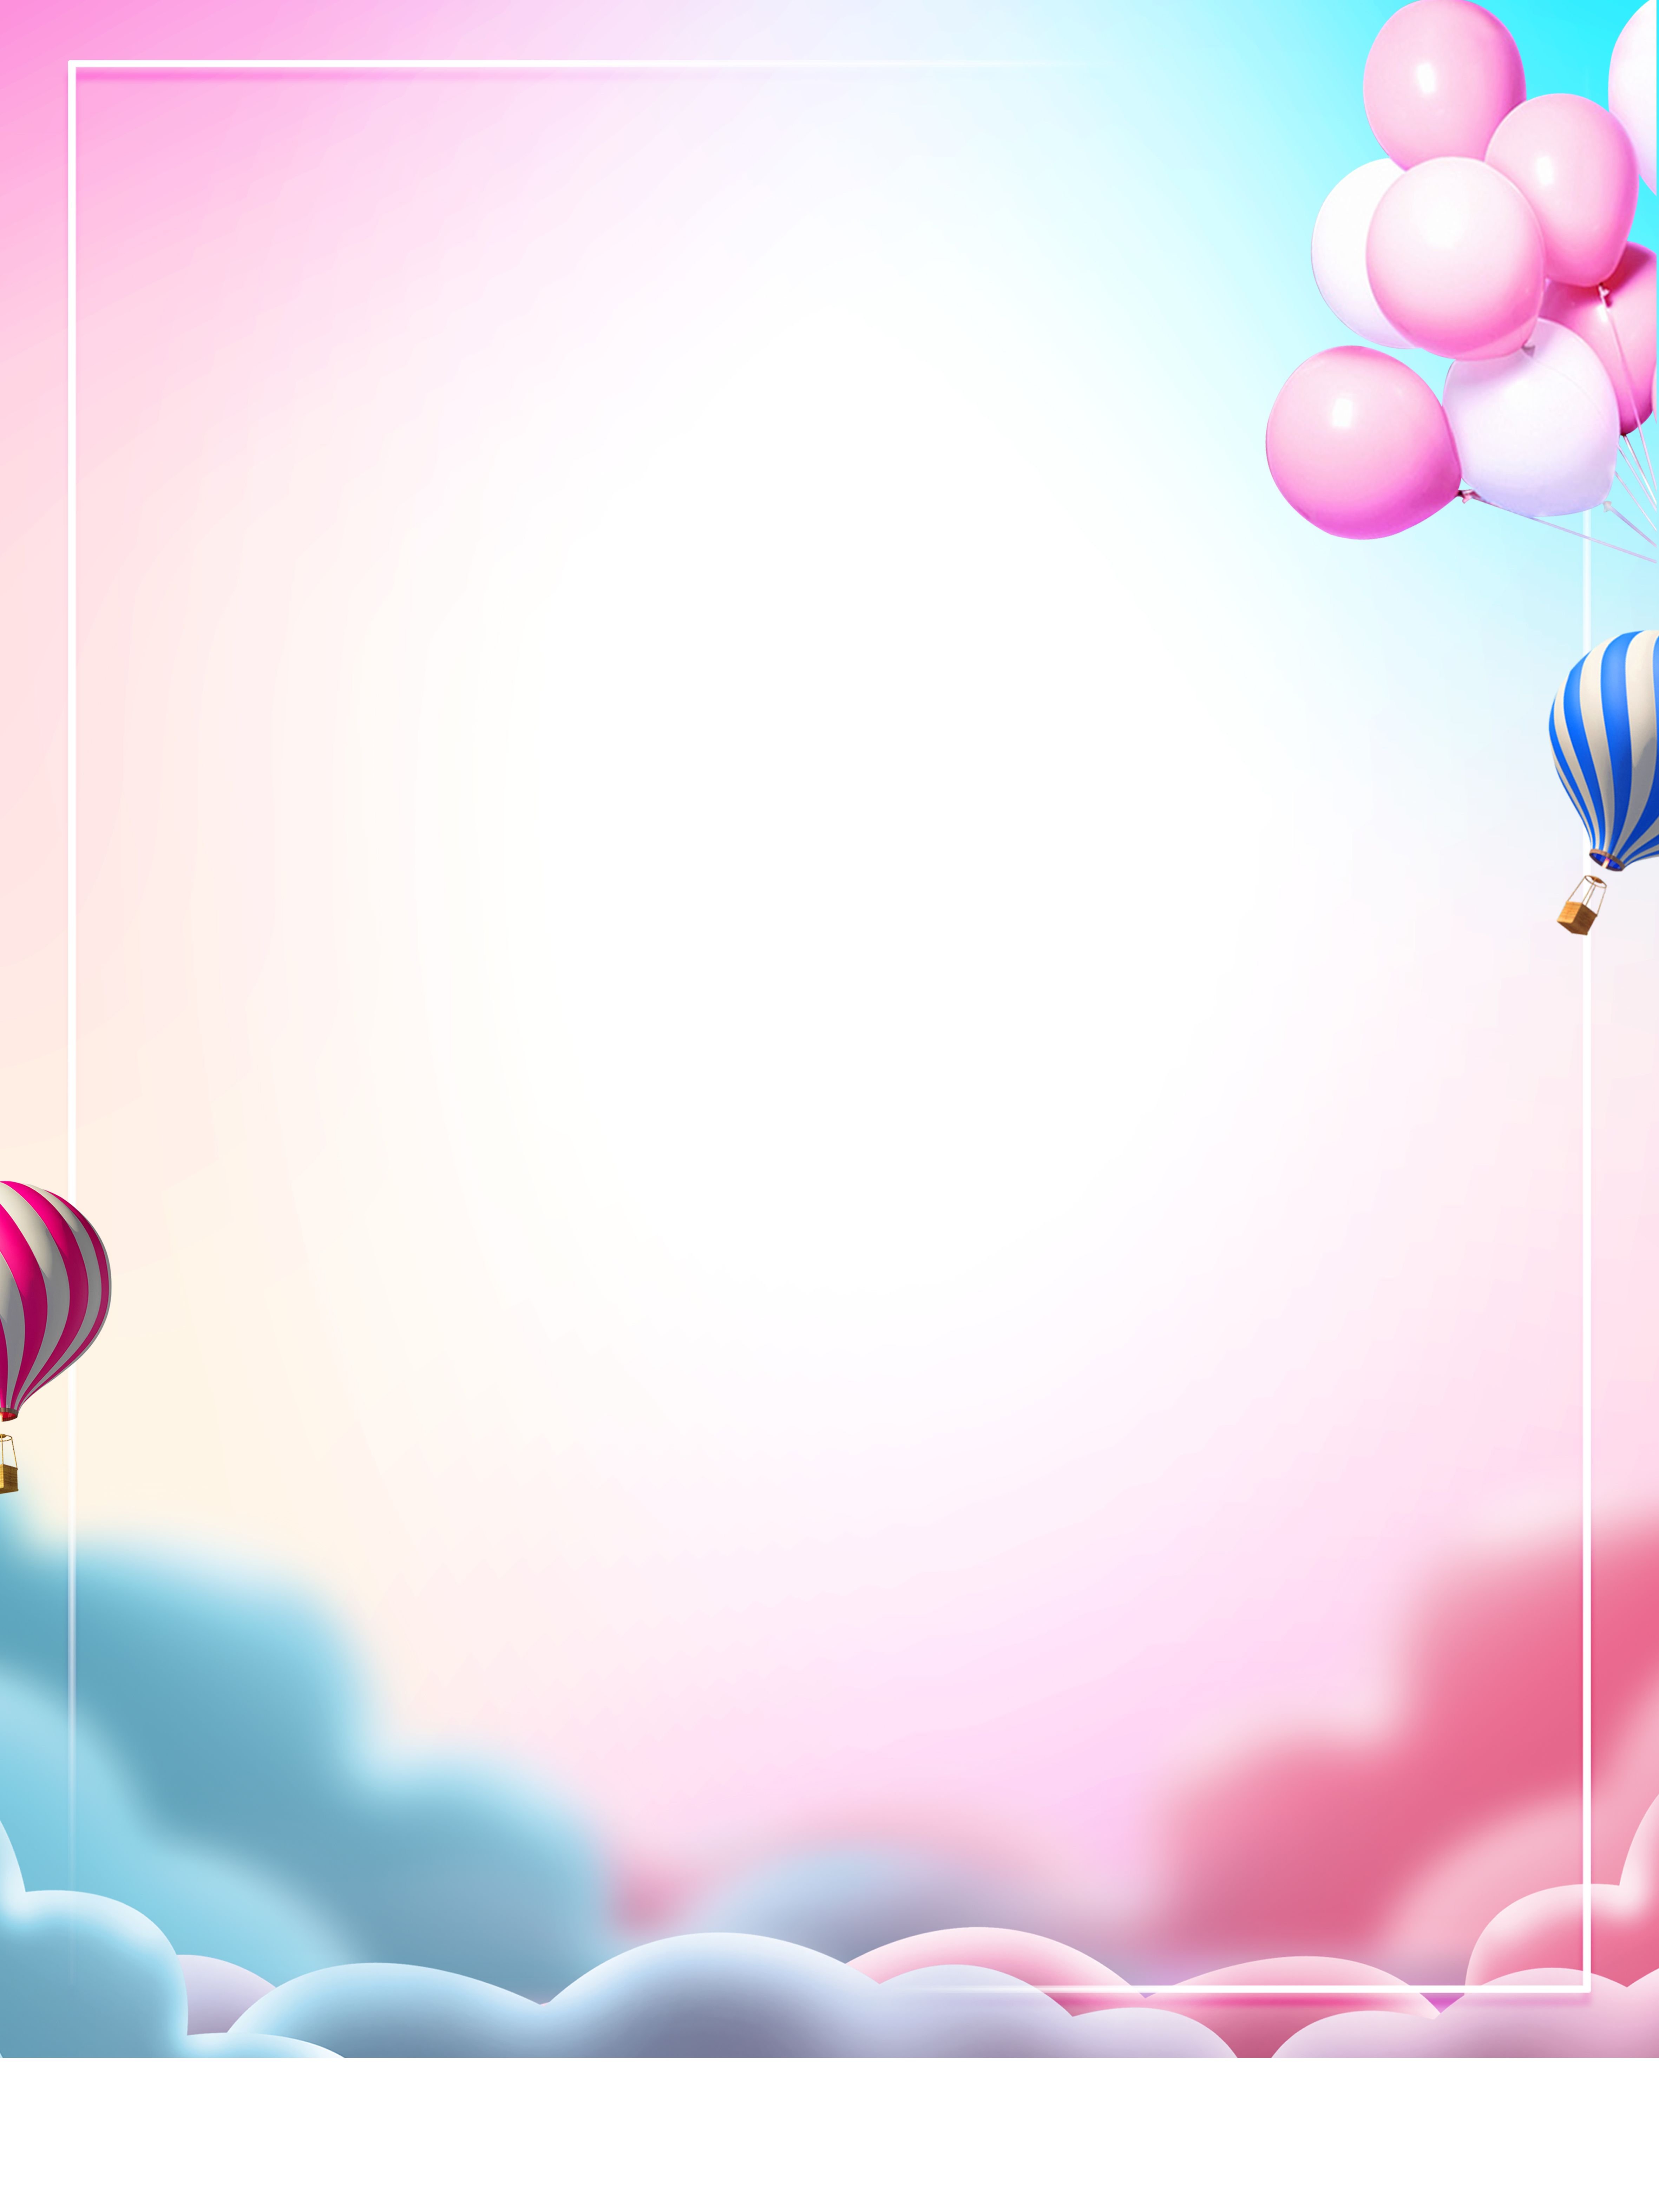 Фон с днем рождения вертикально. Праздничный фон. Праздничный фон день рождения. Фон с воздушными шарами. Фон шарики.